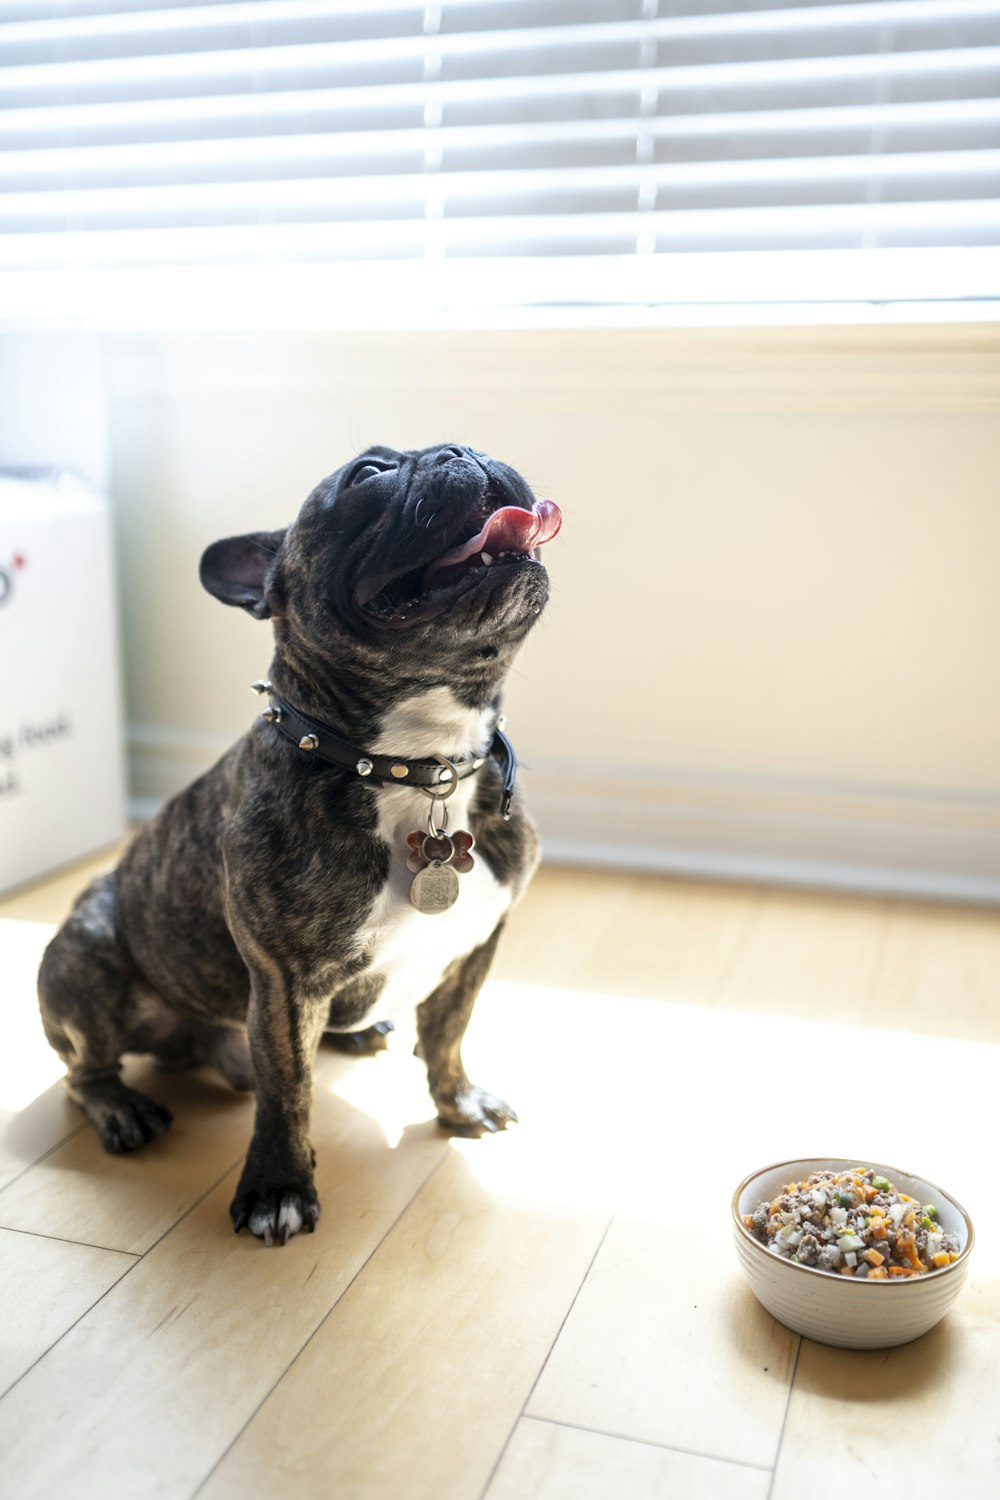 black and white short coated dog sitting on white ceramic round plate
raw dog food
dog food